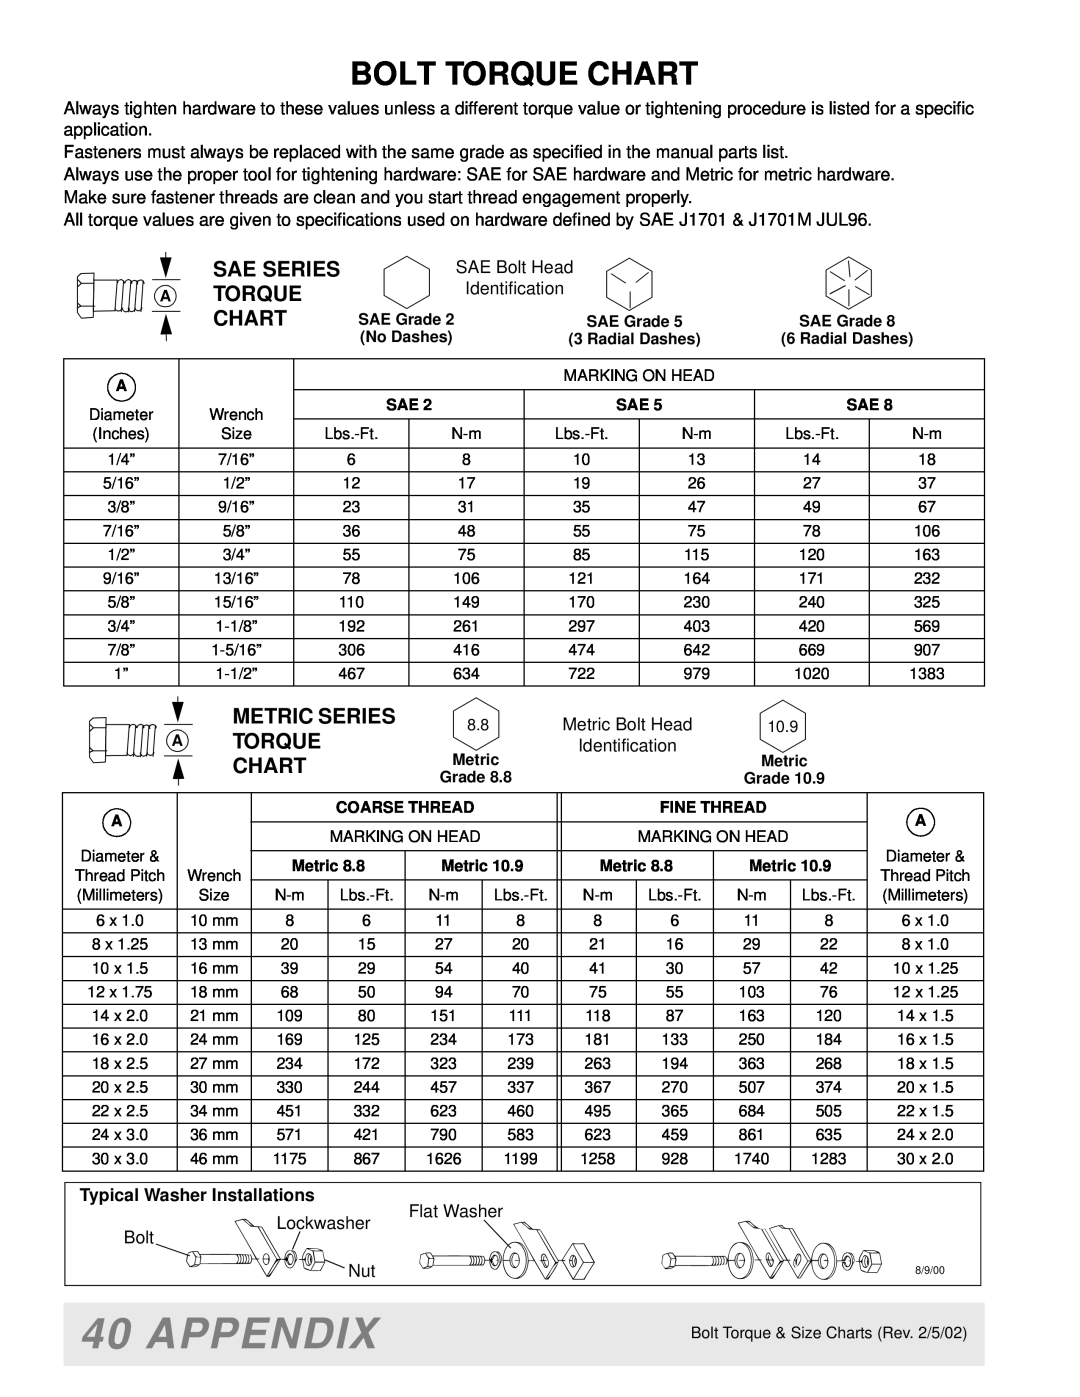 Woods Equipment M8200 manual Appendix, Bolt Torque Chart 